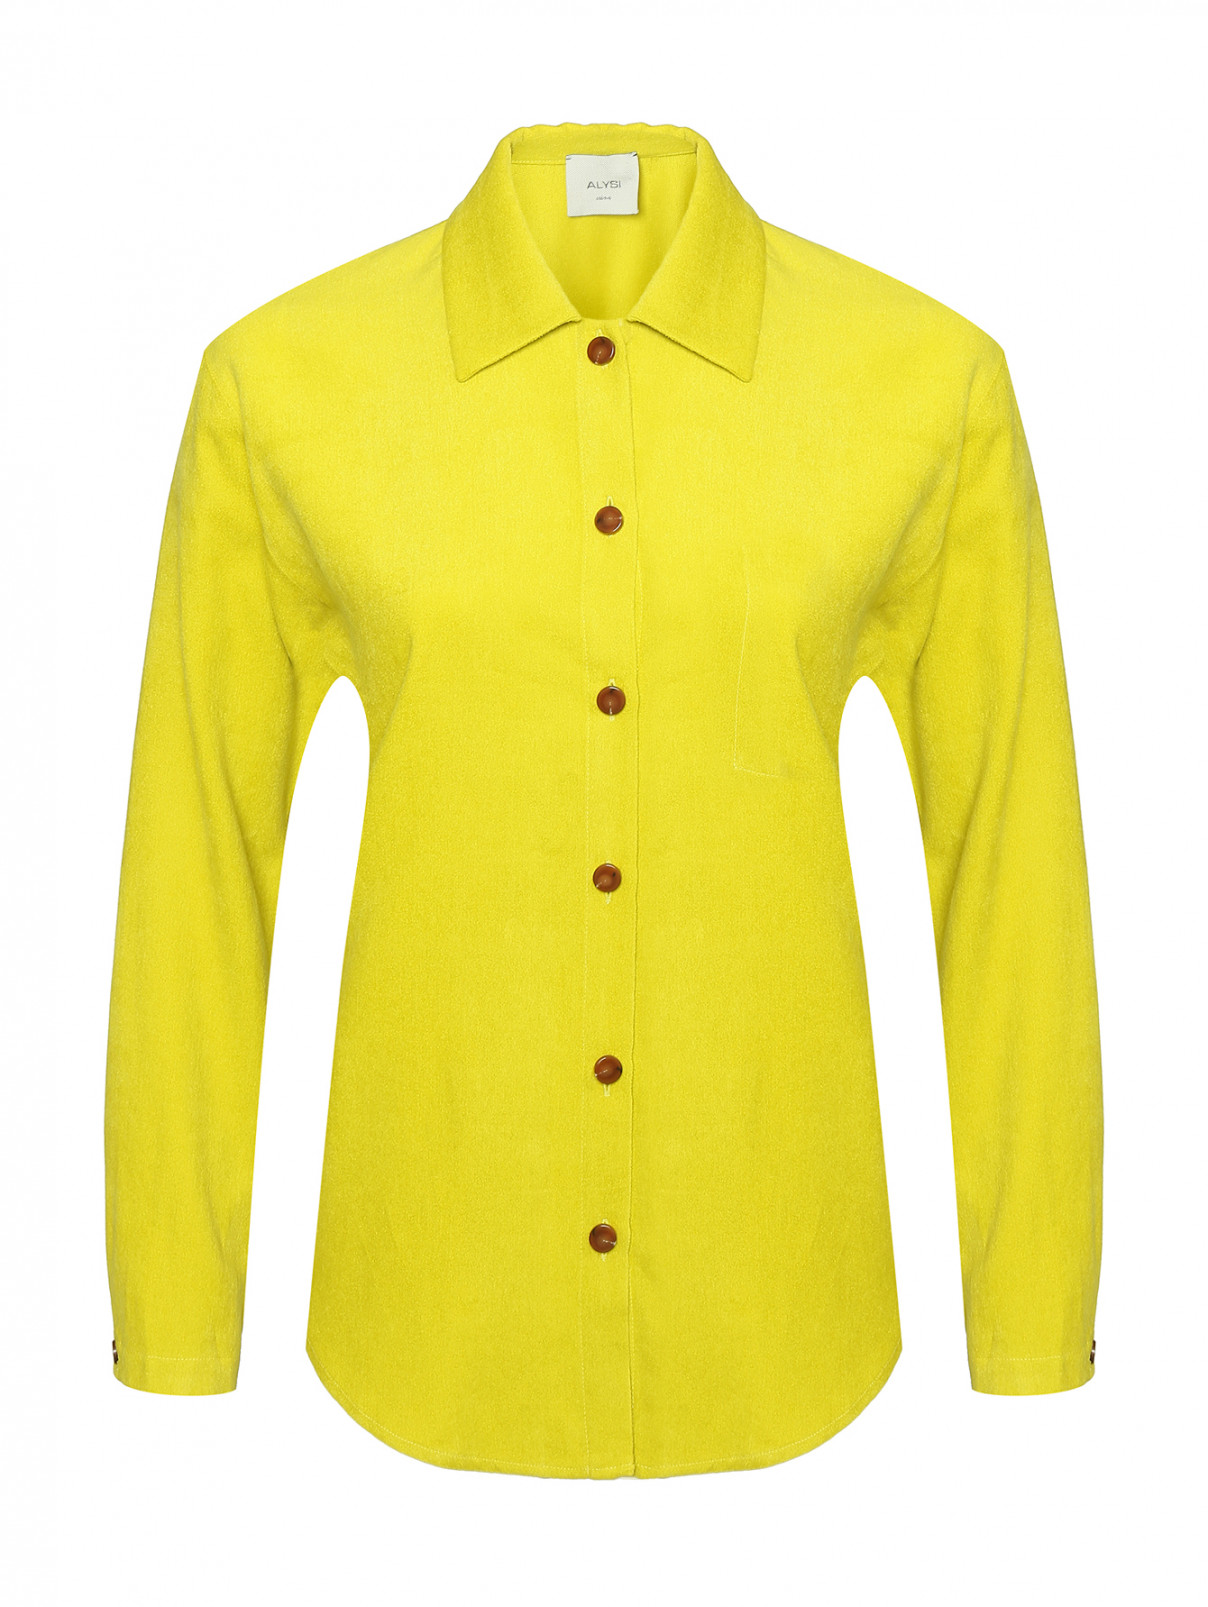 Блуза-рубашка из вискозы и хлопка Alysi  –  Общий вид  – Цвет:  Желтый